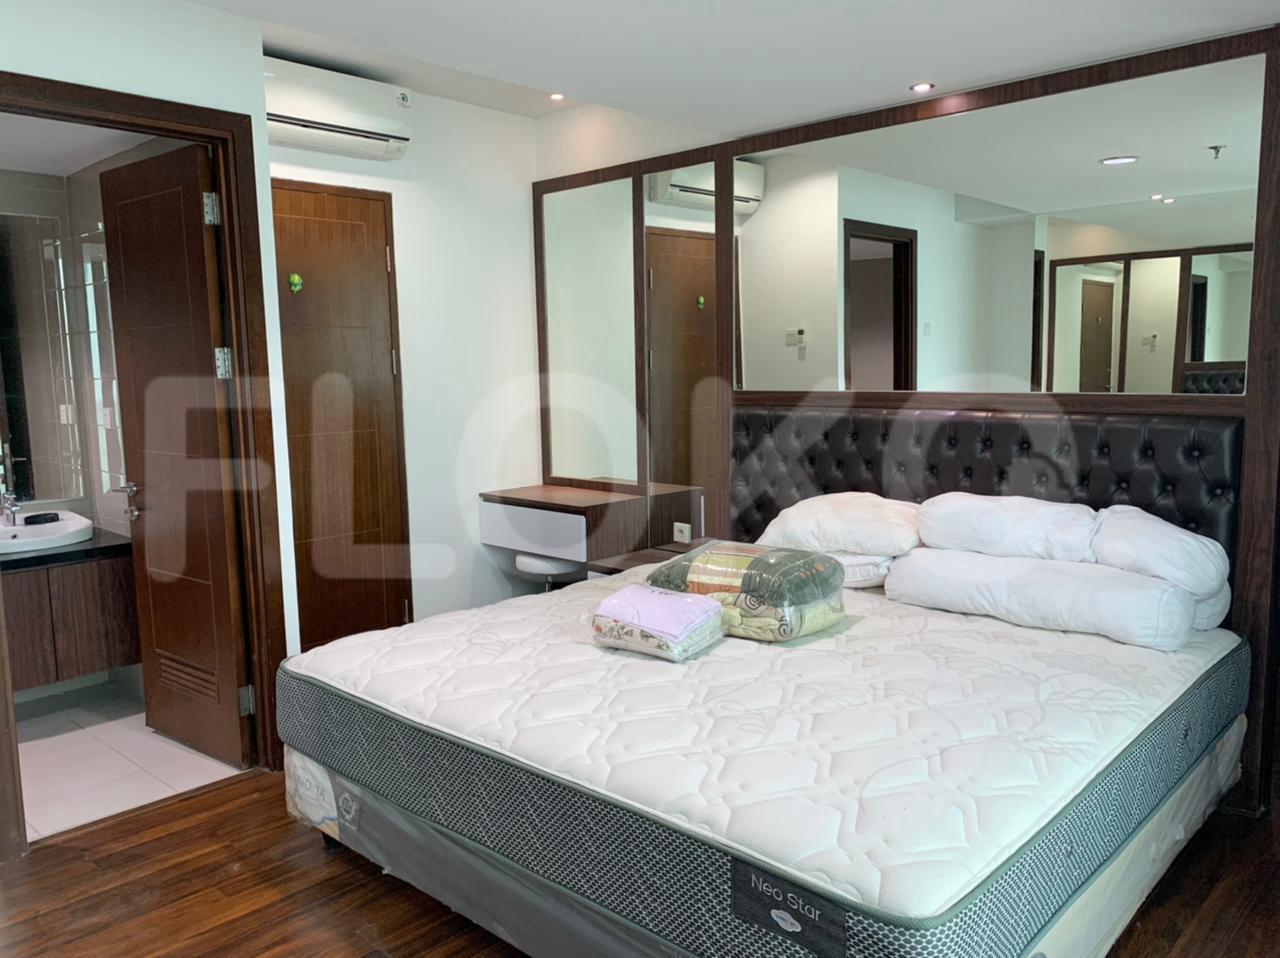 Sewa Apartemen Royale Springhill Residence Tipe 3 Kamar Tidur di Lantai 18 fkeed5